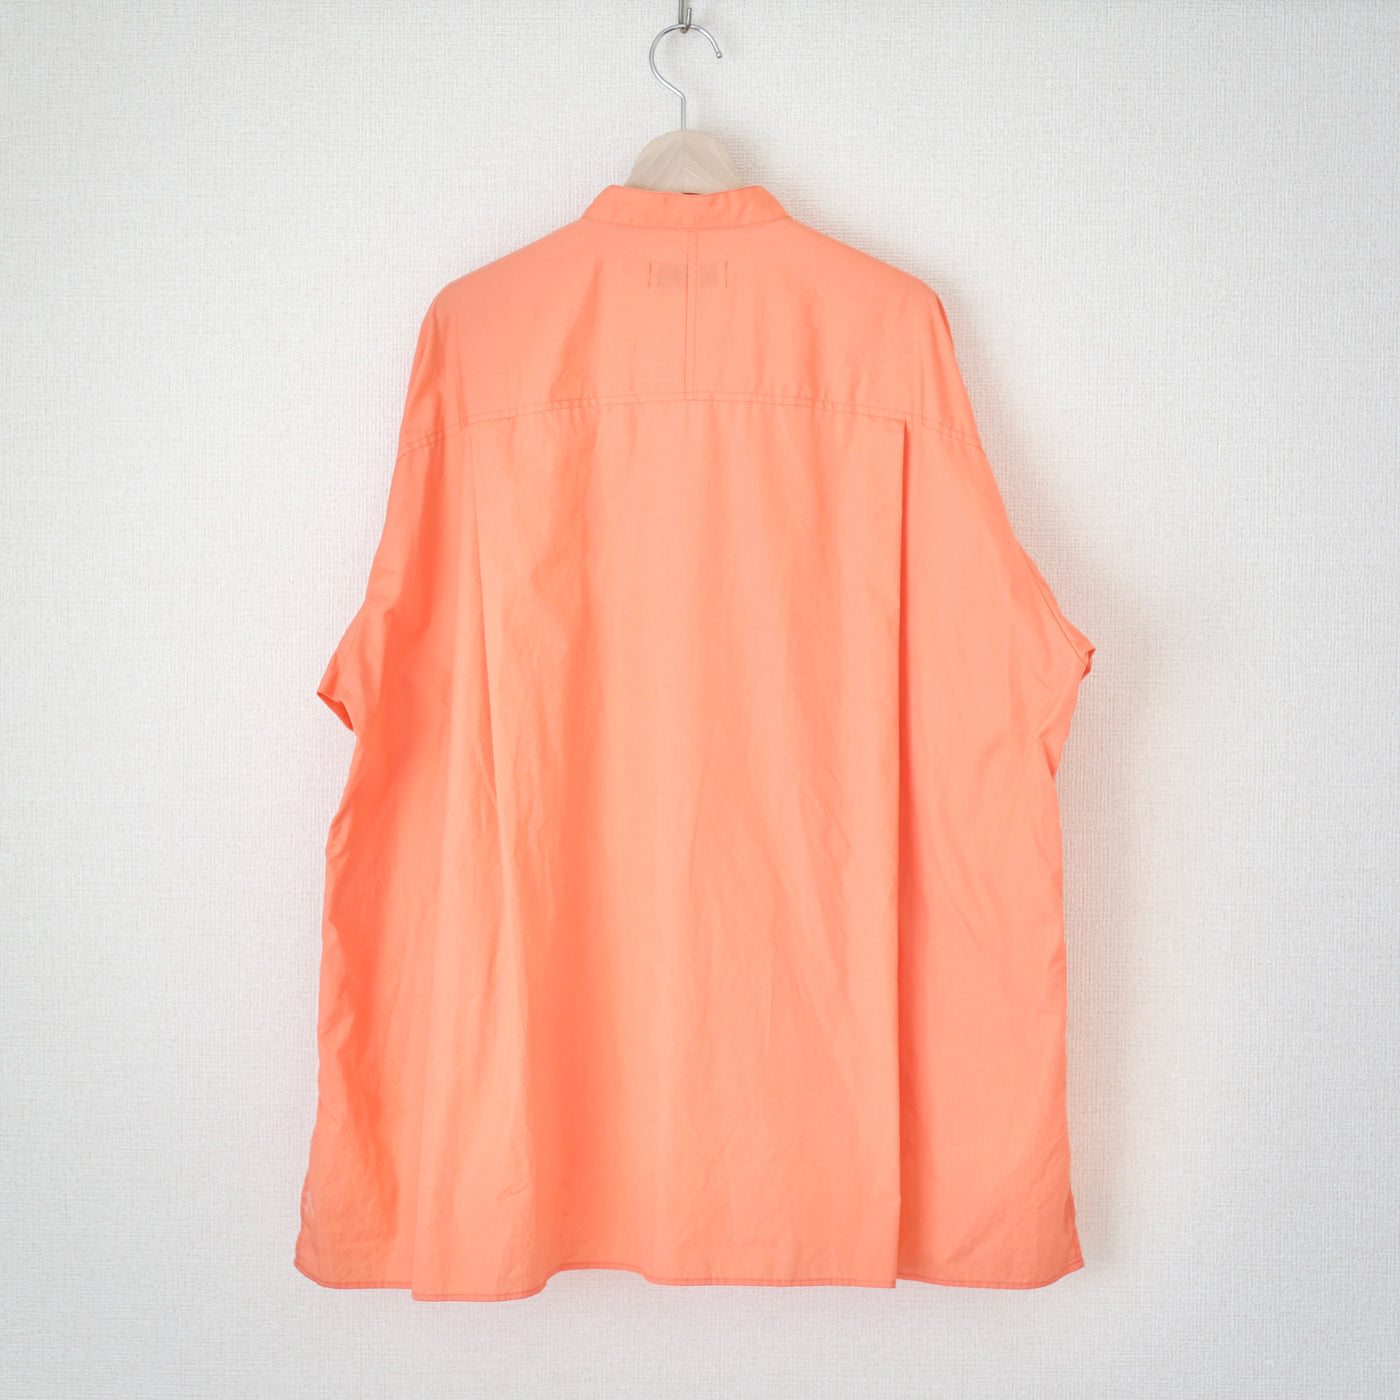 30%OFF【SAMPLE SALE】綿のホーリーシャツ / コーラルピンク / Fサイズ